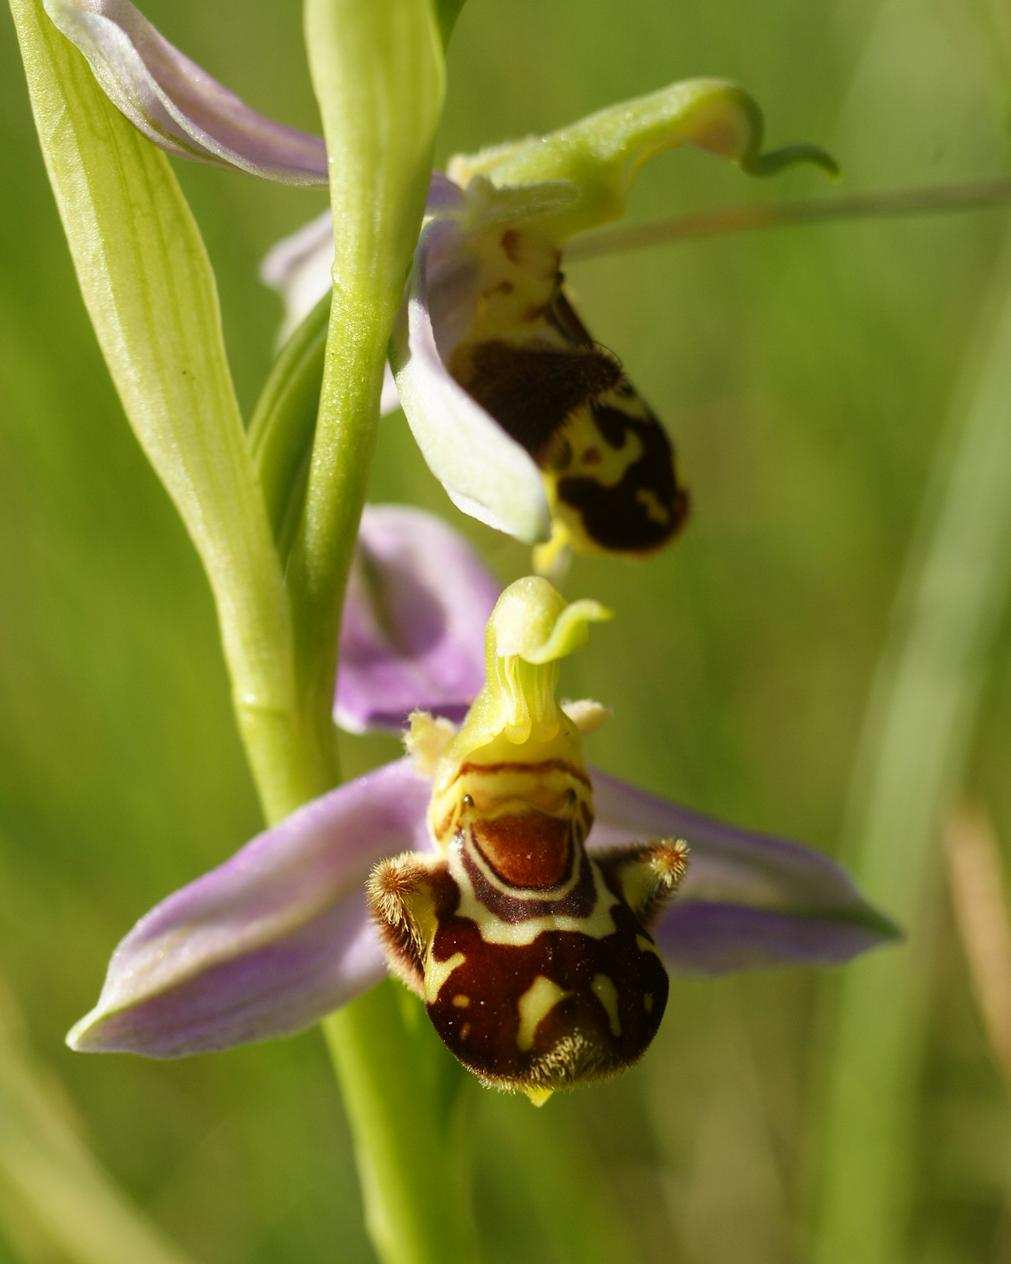 les Ophrys 1 - Ophrys araignée (sépales verts - labelle arrondi) 2 - Ophrys mouche (sépales verts - labelle